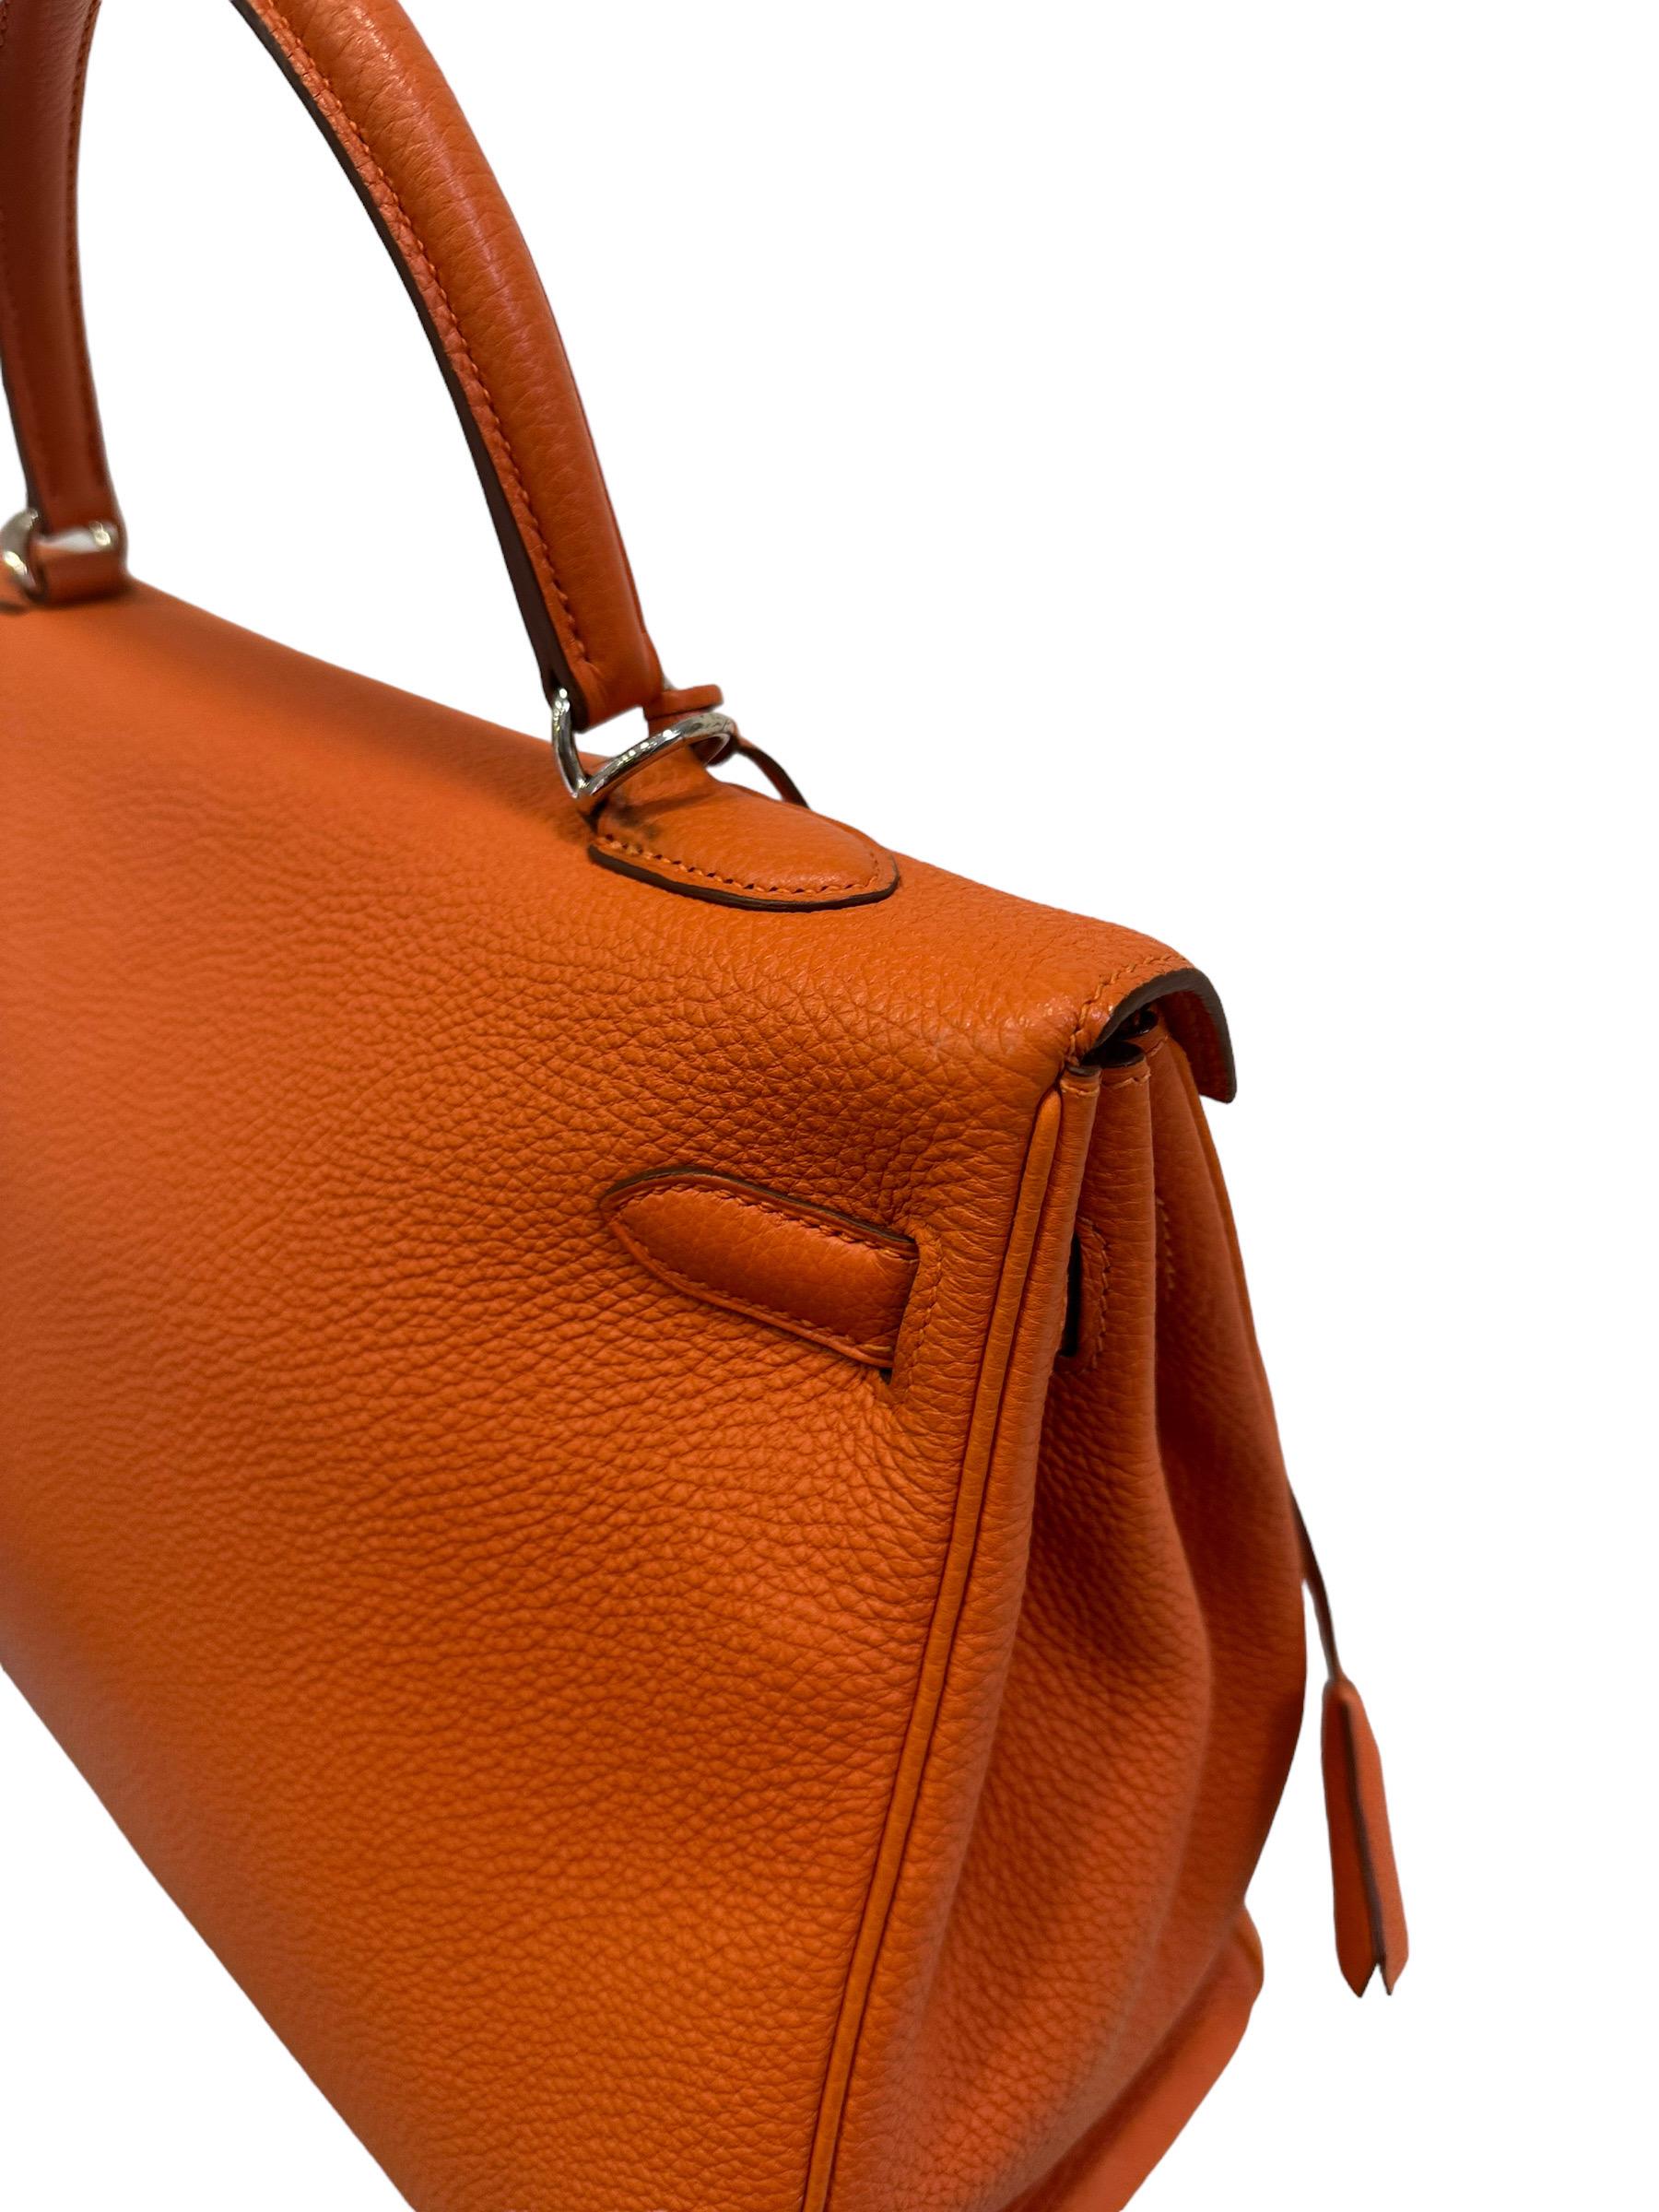 2011 Hermès Kelly 35 Fjord Leather Orange Top Handle Bag  3